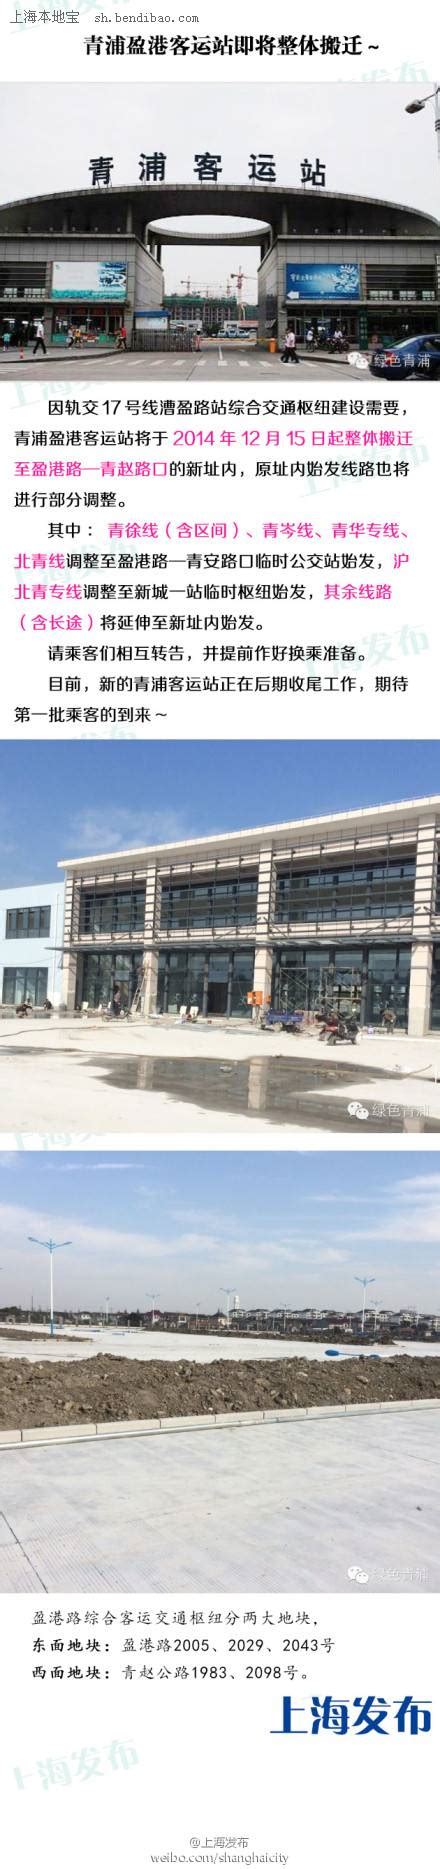 青浦客运站搬迁新址 部分公交始发调整- 上海本地宝